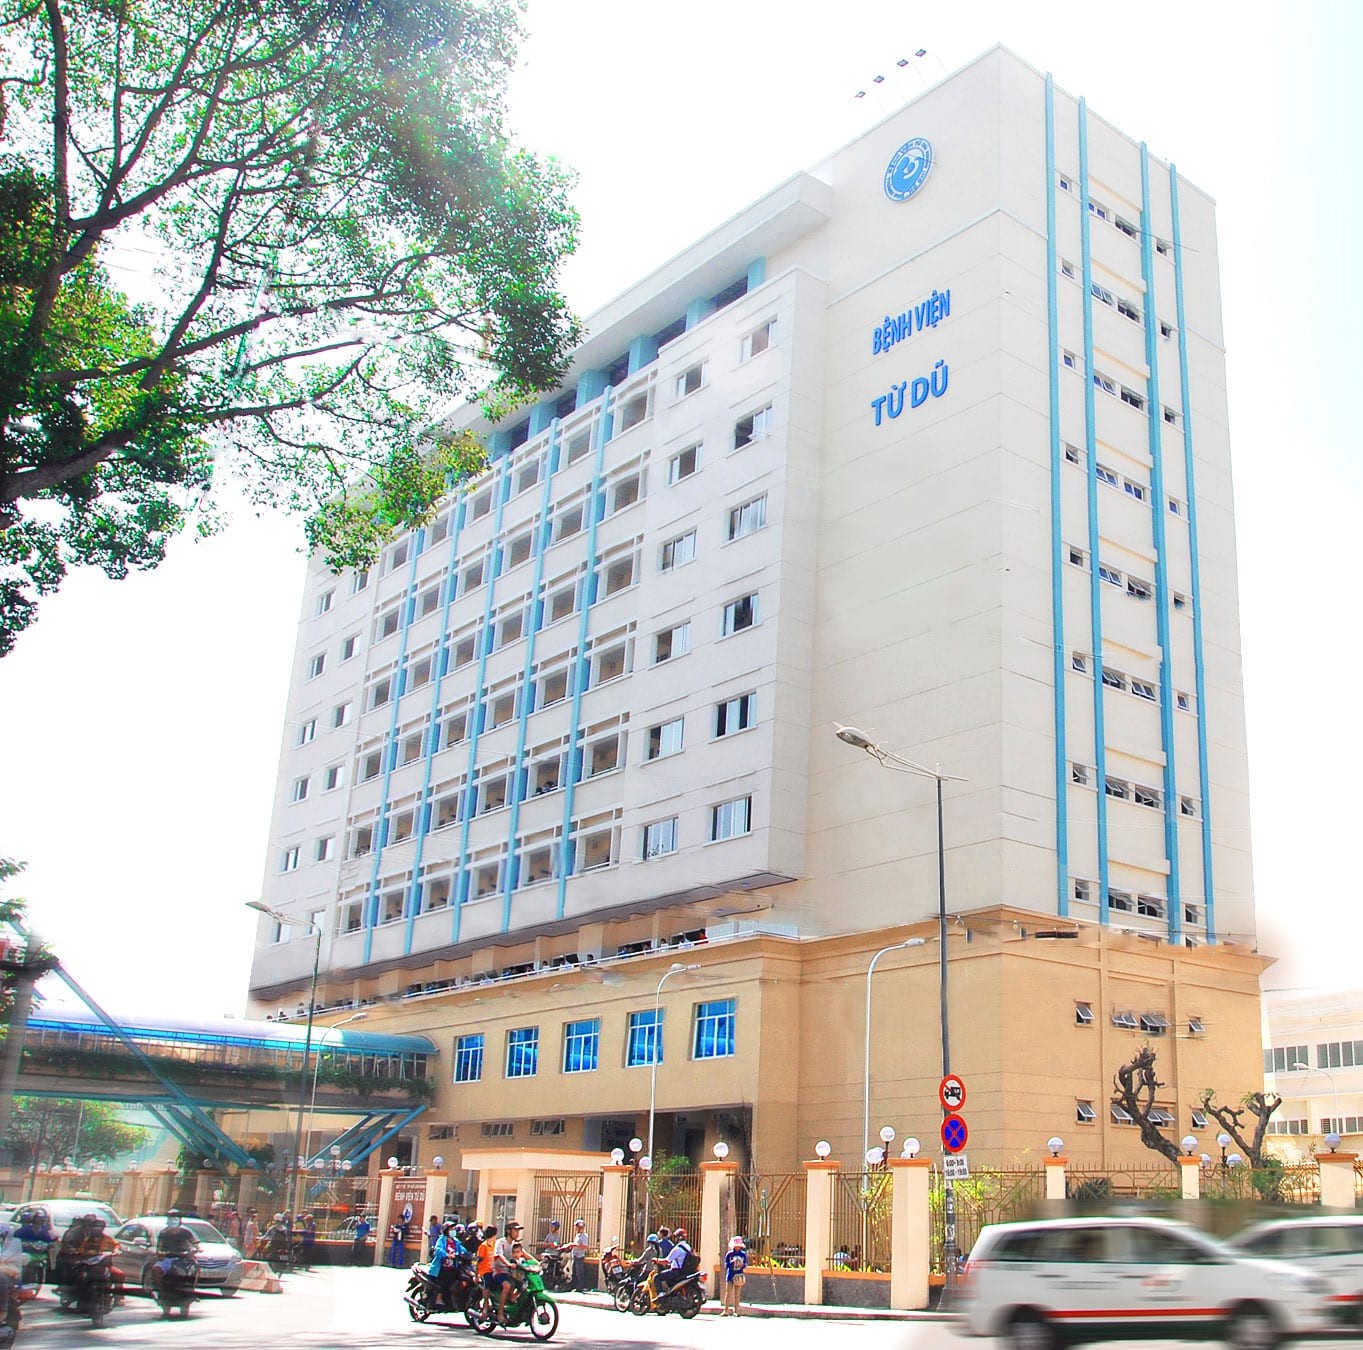 Bệnh viện Từ Dũ là một trong những bệnh viện đầu ngành về sản phụ khoa của TP.HCM và cả nước